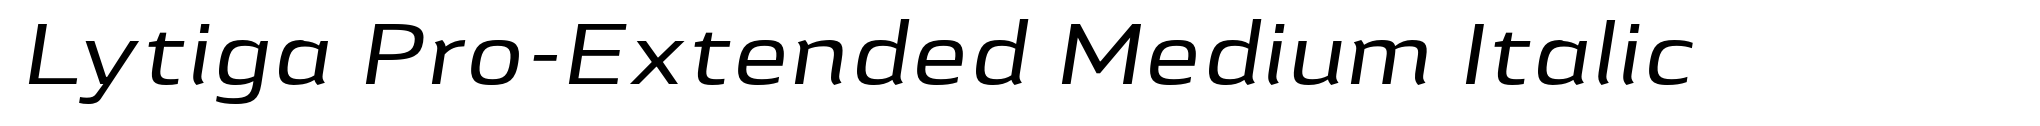 Lytiga Pro-Extended Medium Italic image